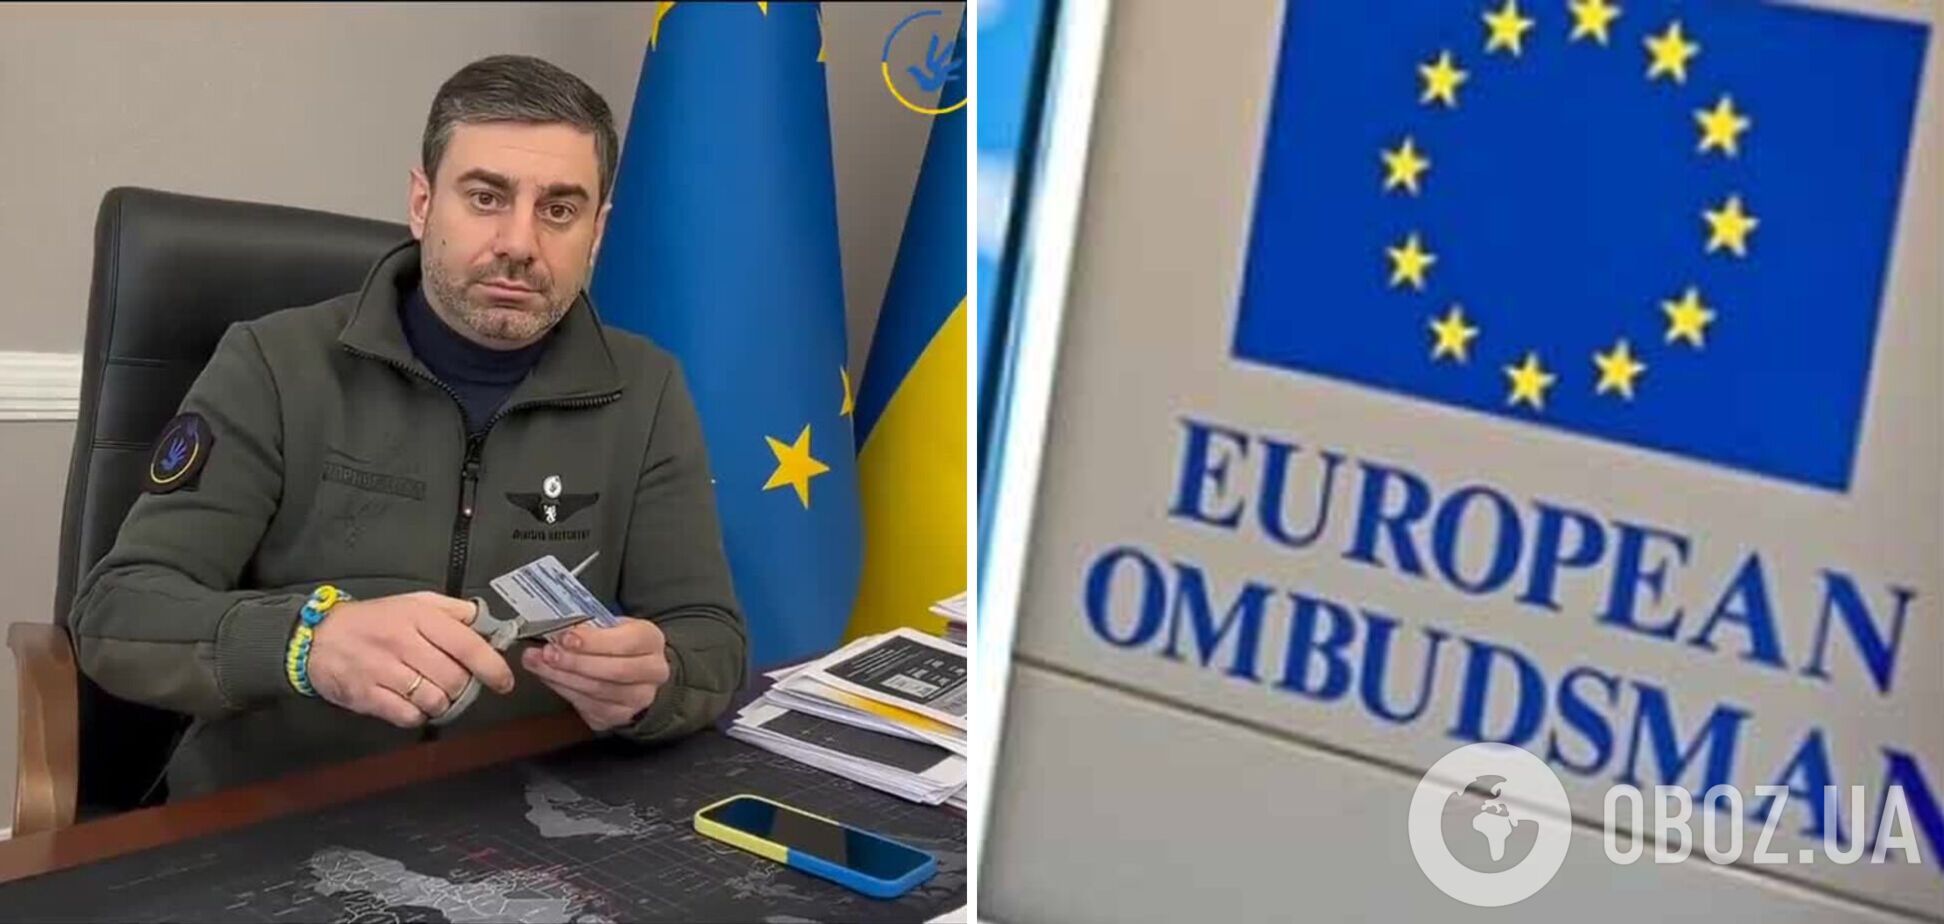 Лубинец порезал членский билет Европейского института омбудсмана и заявил о выходе из организации: ее член из Австрии вывез в РФ украинских детей